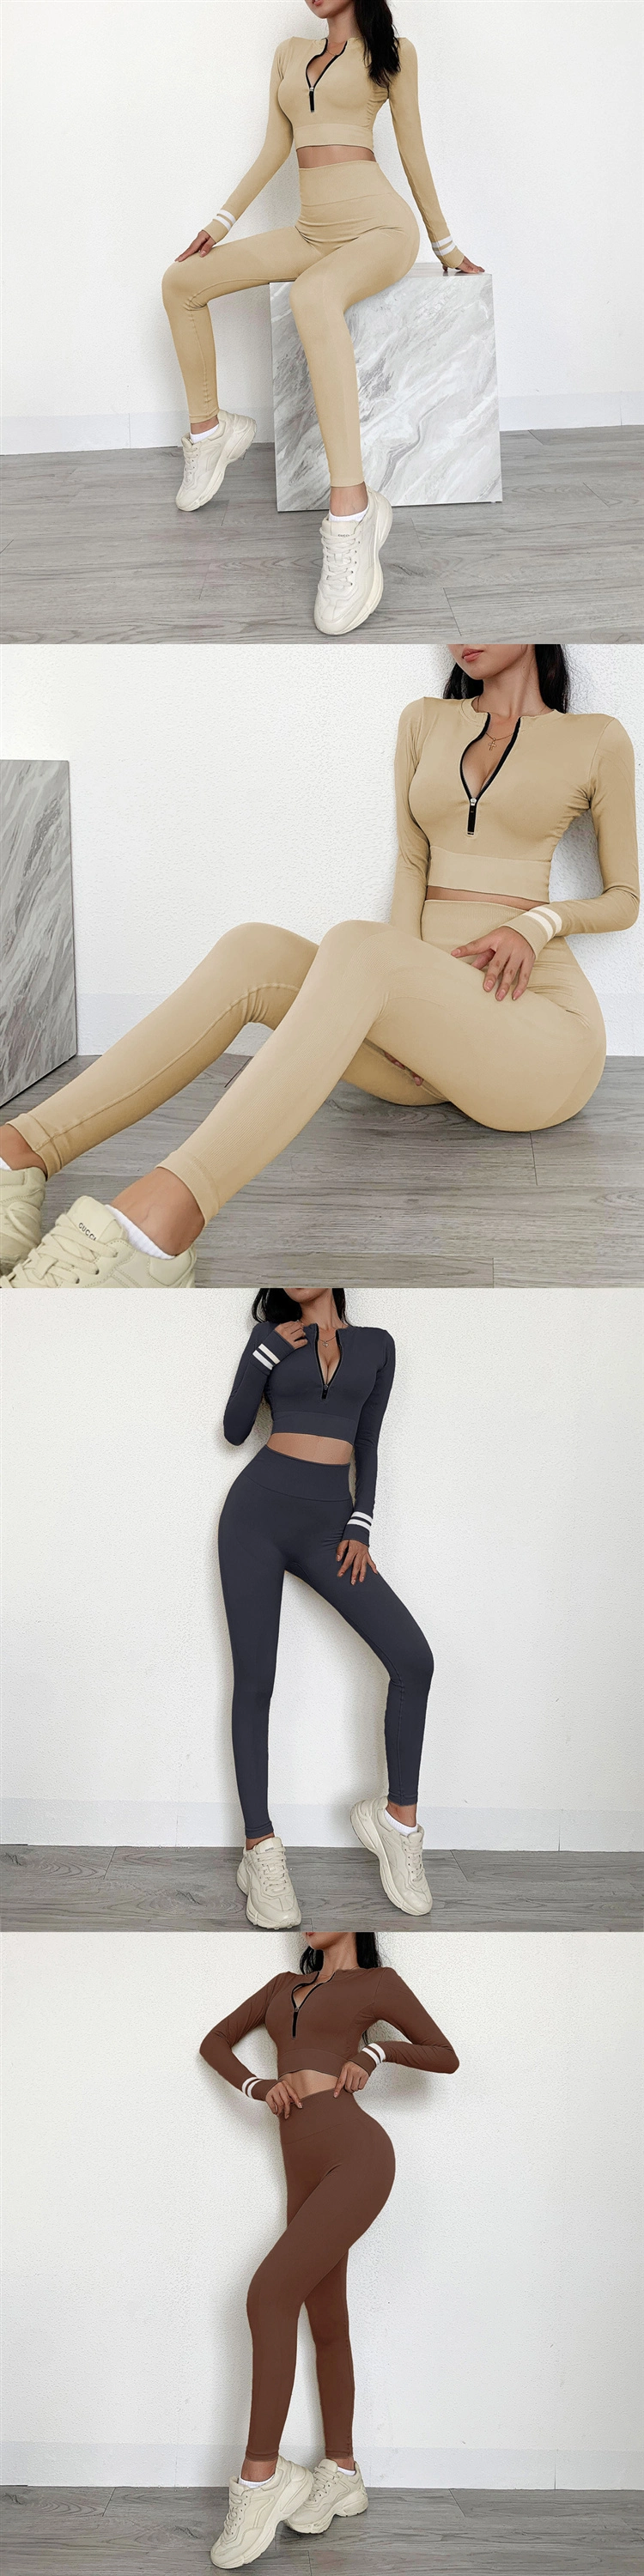 Women Sportswear Outfit Workout Clothes Long Sleeve Yoga Wear Female Zipper Gym Wear